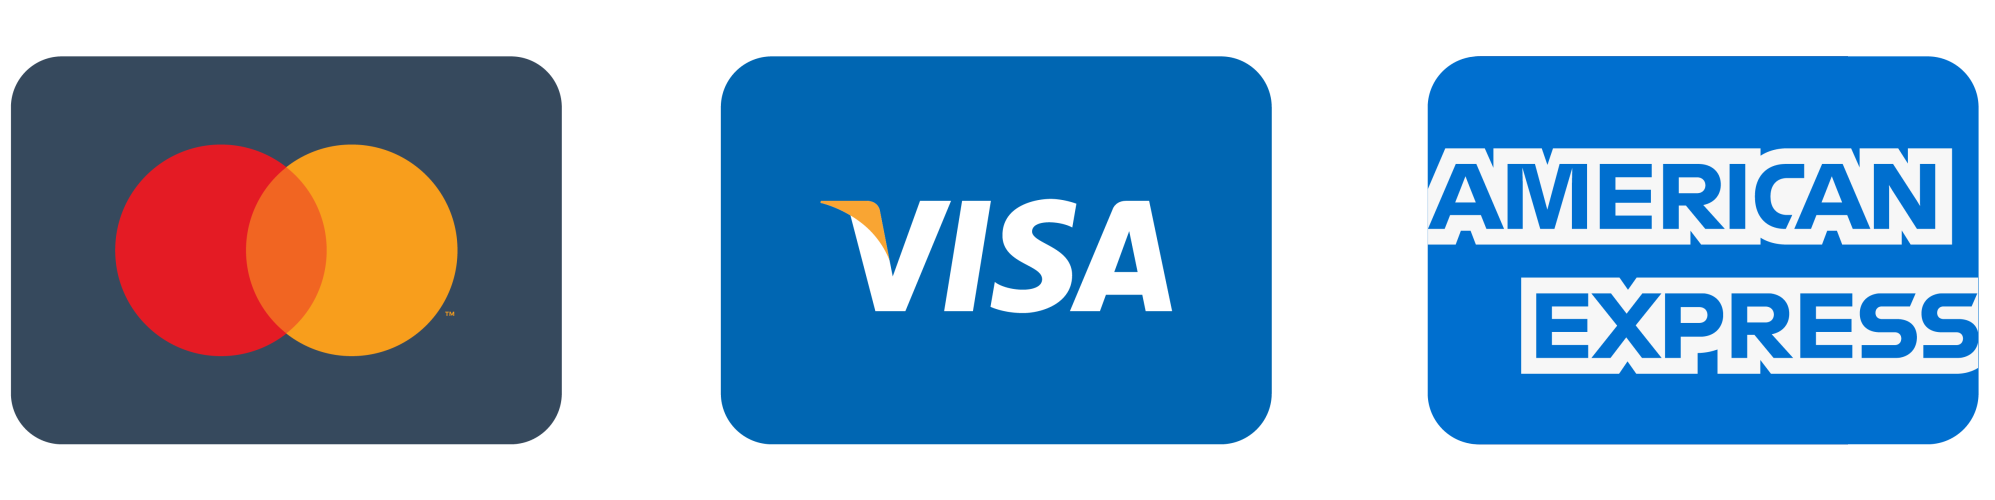 Wij accepteren alle meest bekende credit & debit cards, zoals Mastercard, Visa, Maestro en American Express